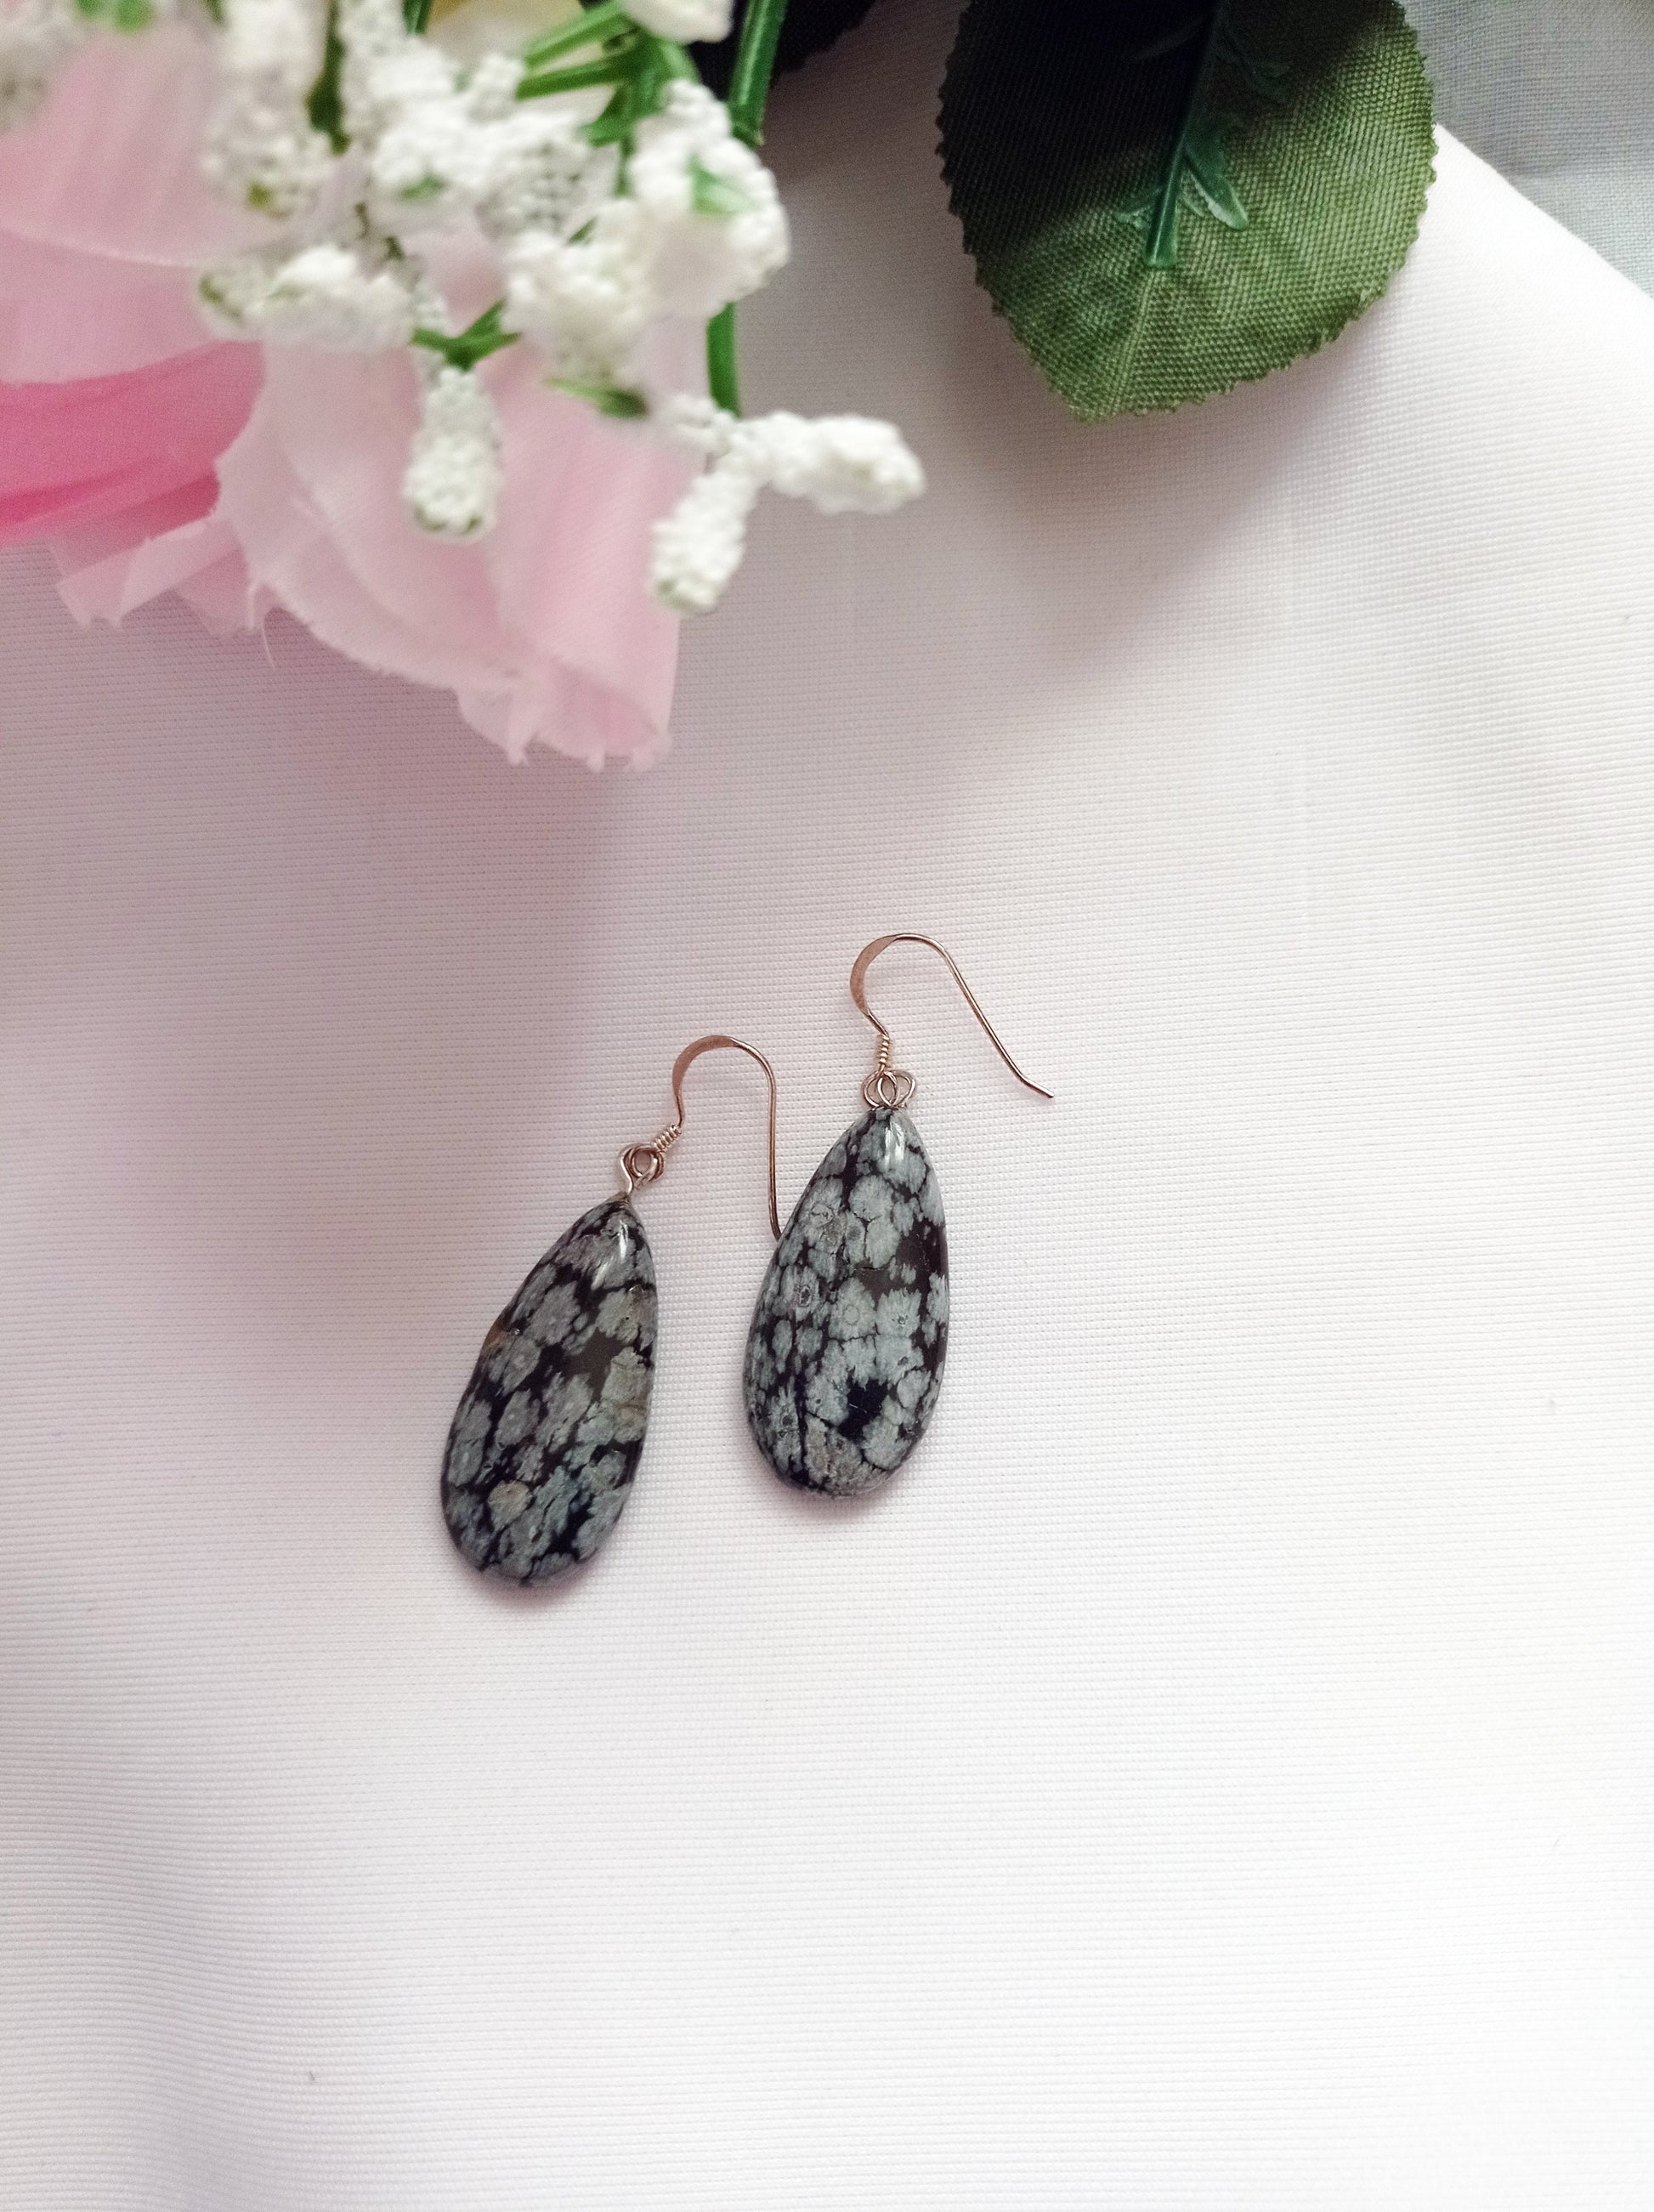 Snowflake Obsidian Earrings, Teardrop Sterling Silver Earrings, Gemstone Earrings | by nlanlaVictory-1